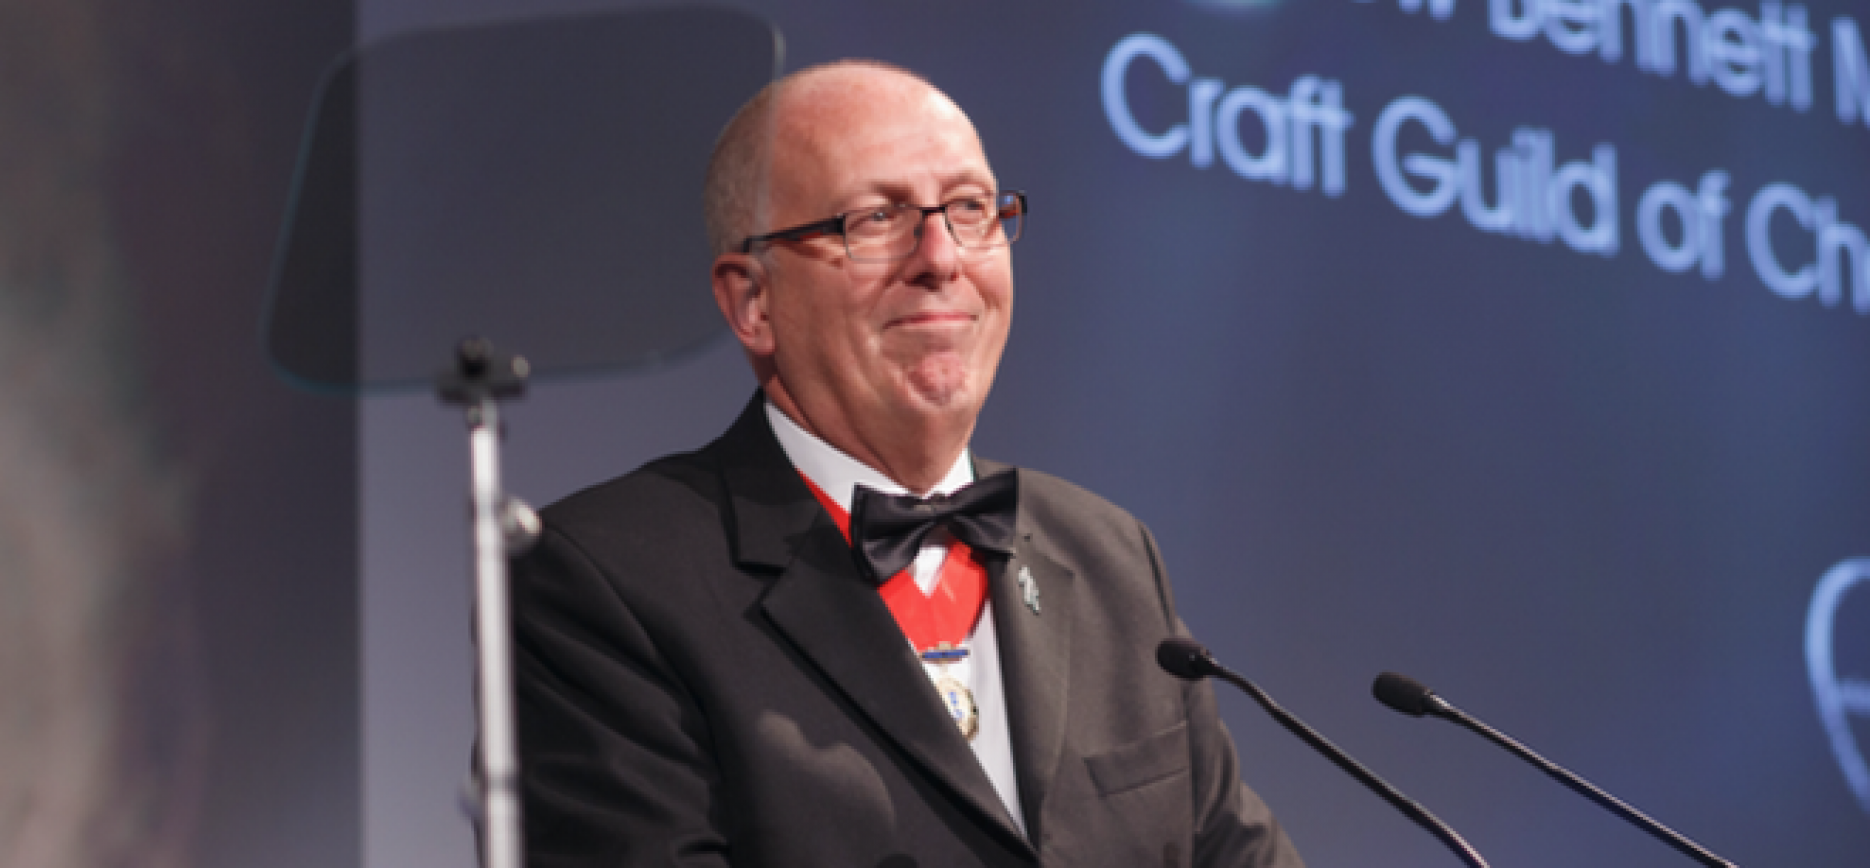 Former Craft Guild of Chefs chairman Andrew Bennett 